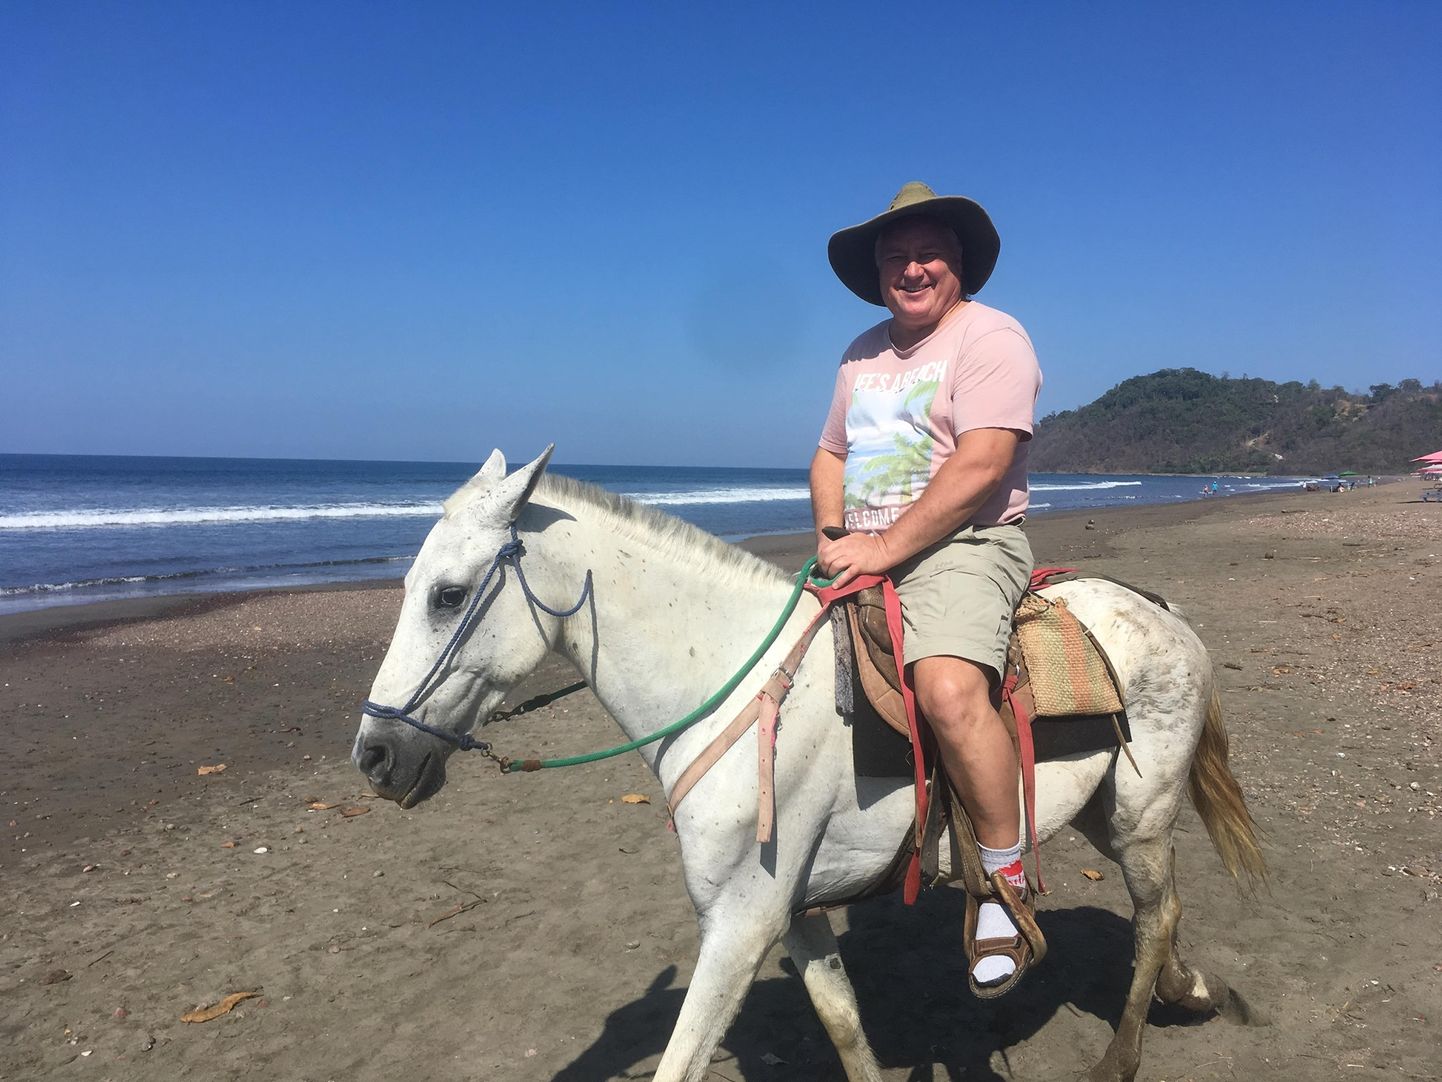 “PÄRAST 50. ELUAASTAT PEAKS RAHULIKUMALT VÕTMA,” nendib Illar Tenno, kes ookeanirannal toimunud kohtumisele saatejuhiga saabus valgel hobusel ratsutades.